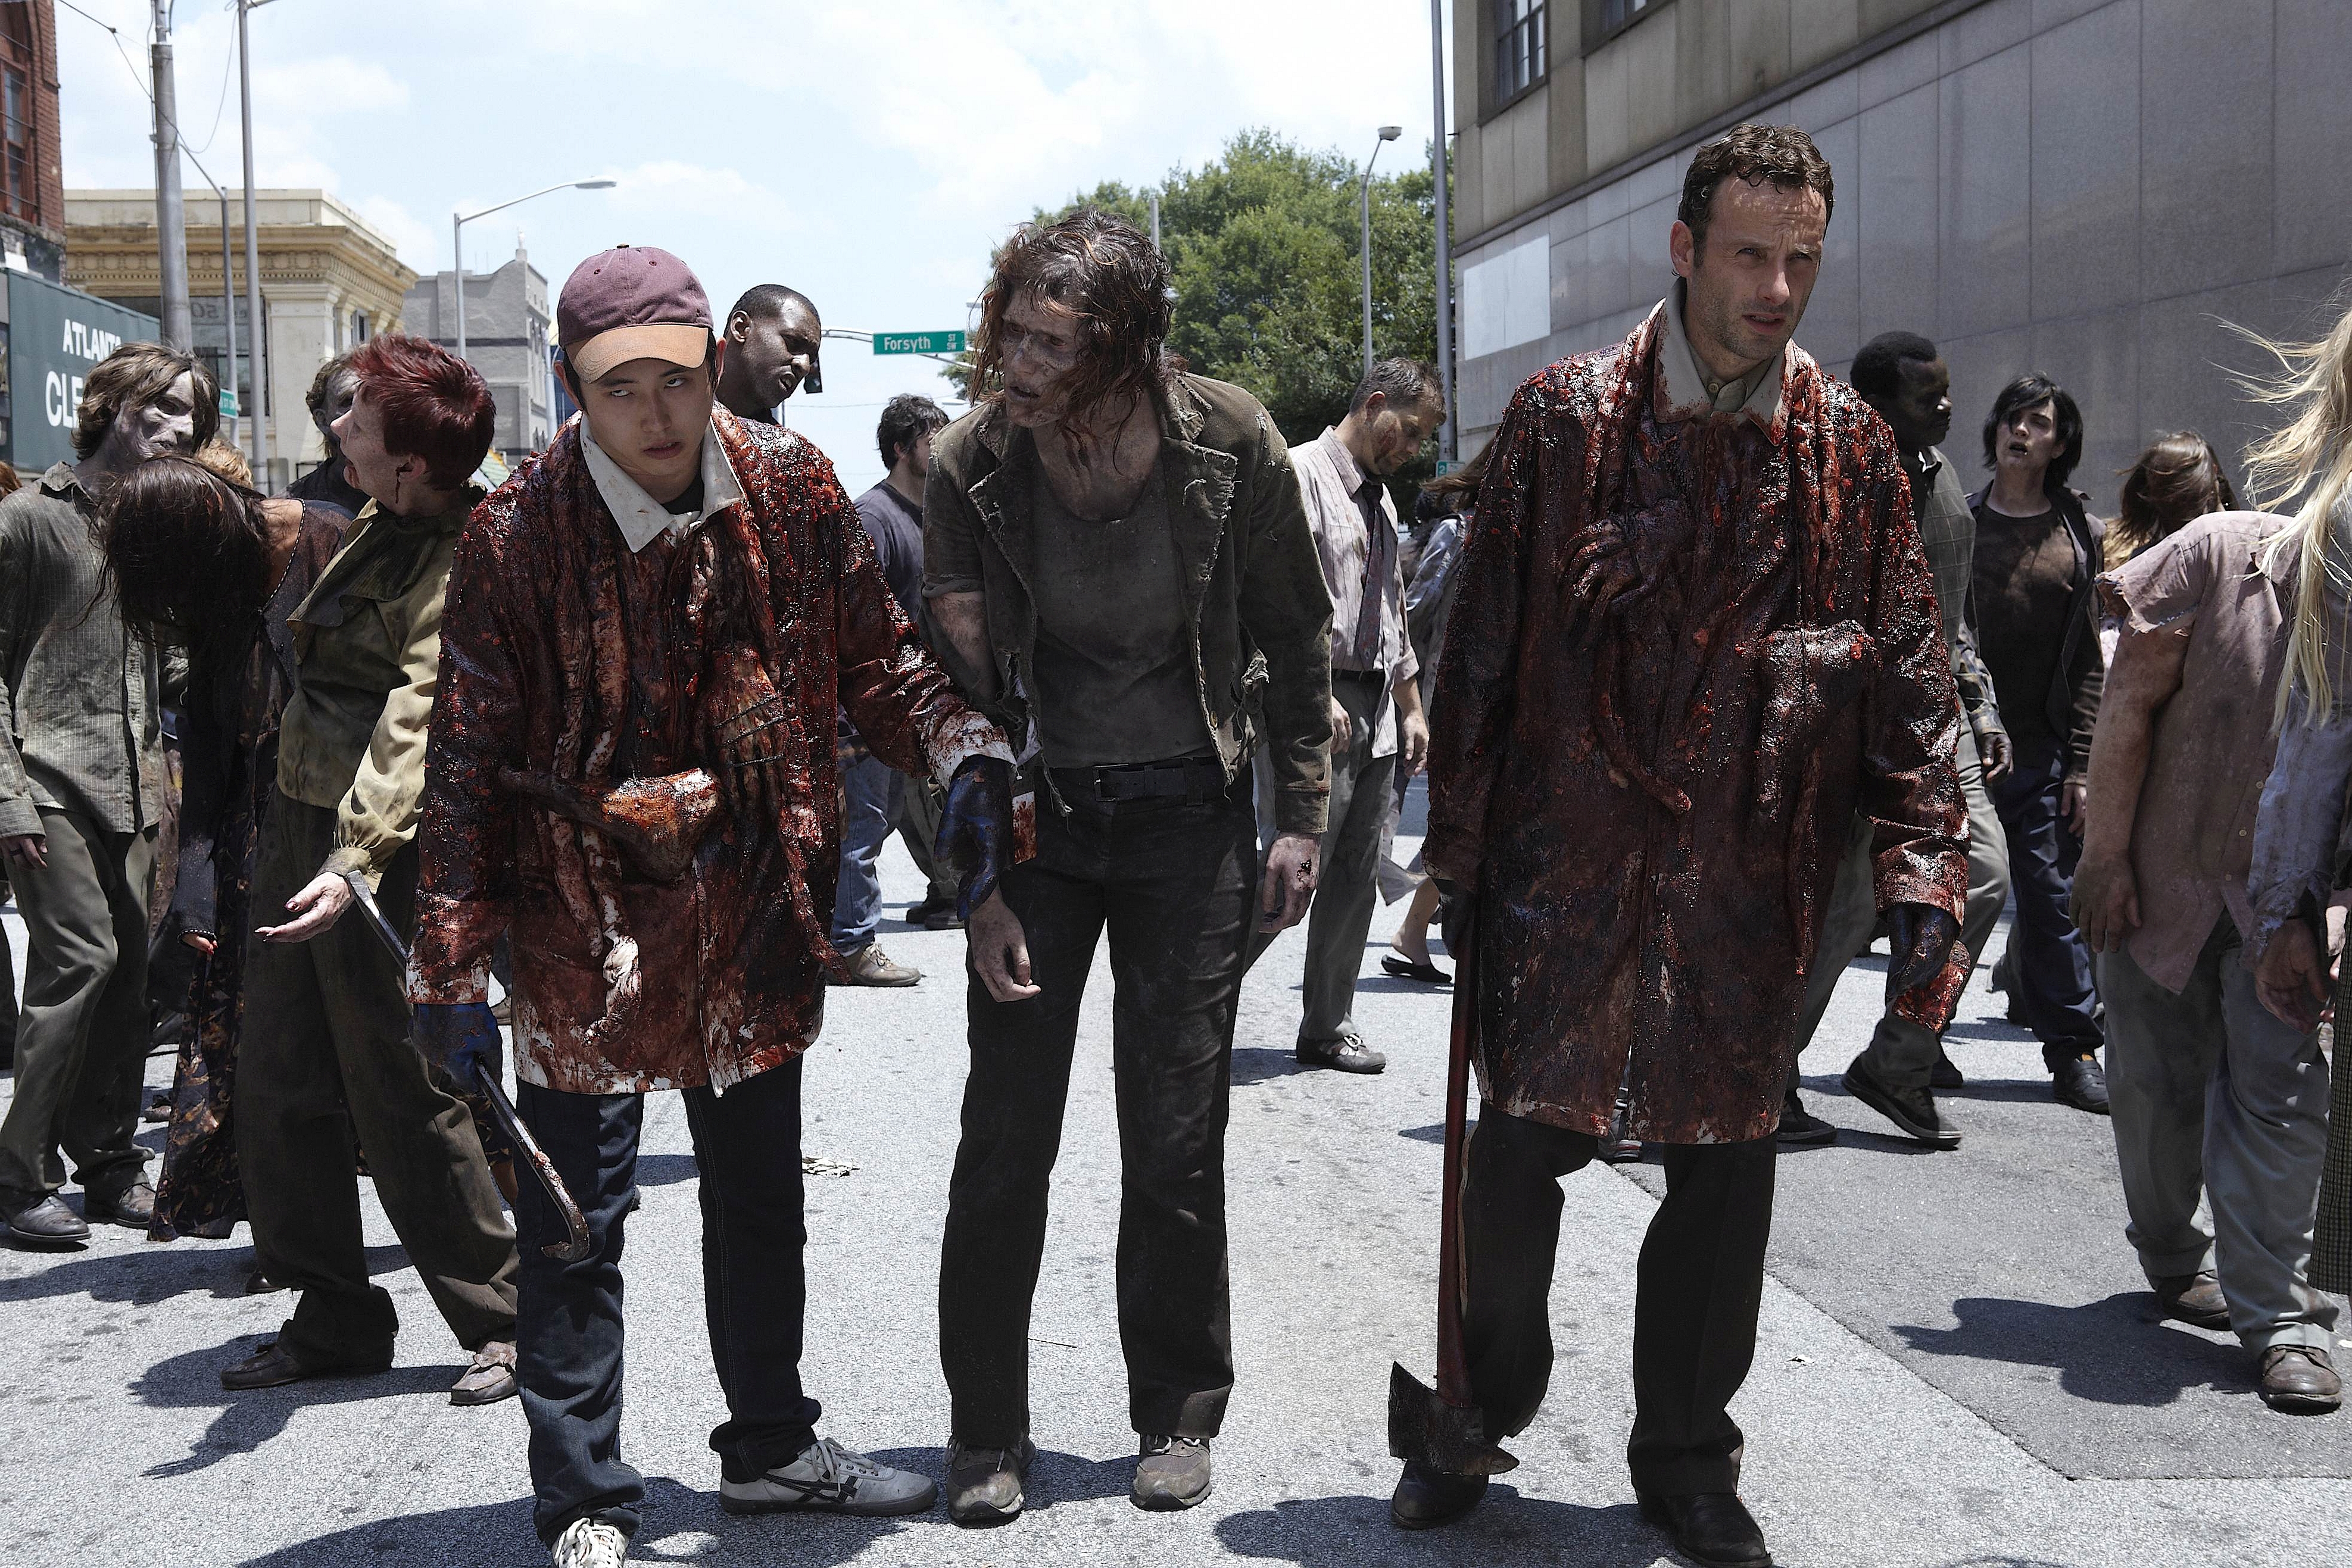 Descarga gratuita de fondo de pantalla para móvil de Series De Televisión, The Walking Dead.